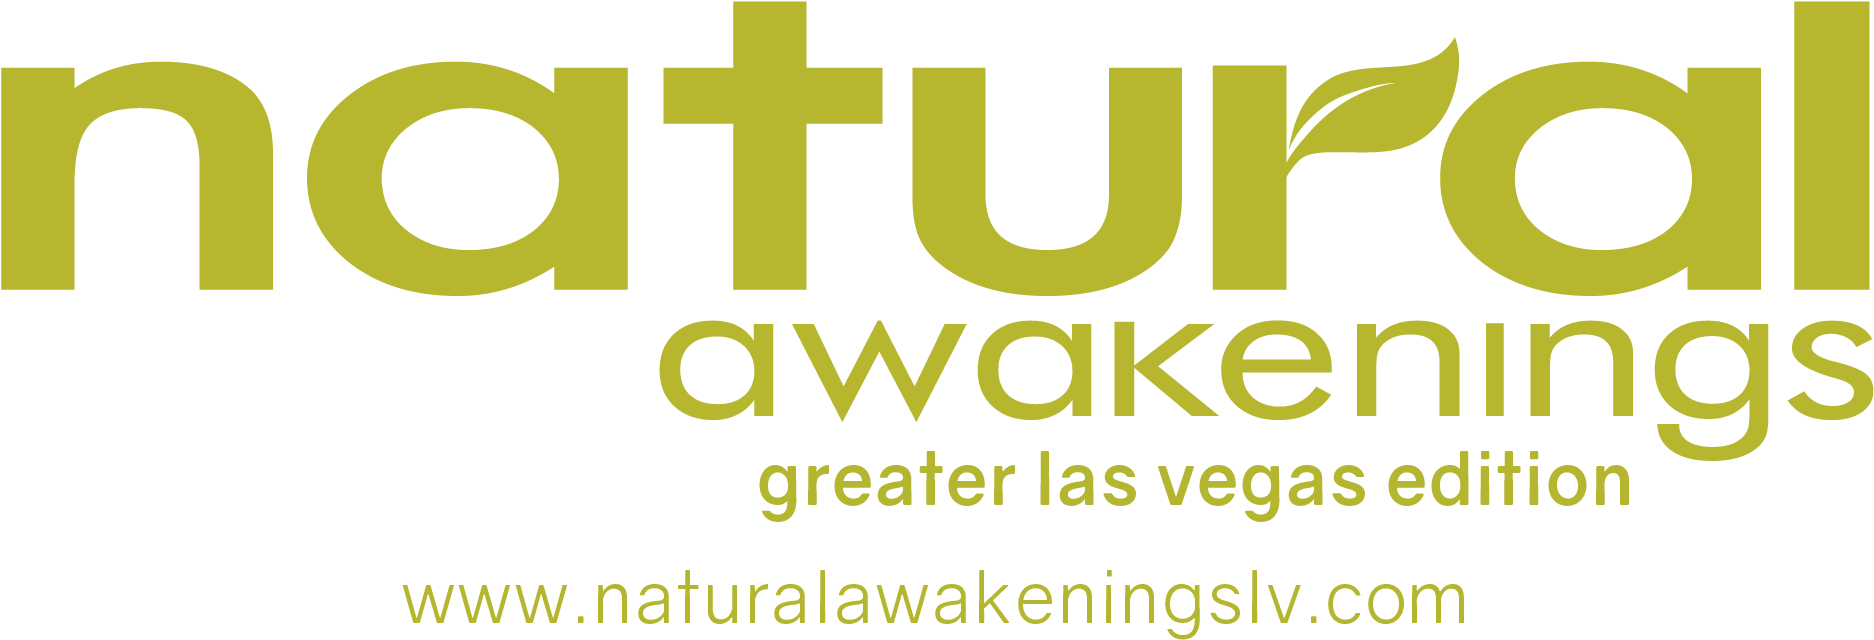 Natural Awakenings Las Vegas Edition Logo PNG image